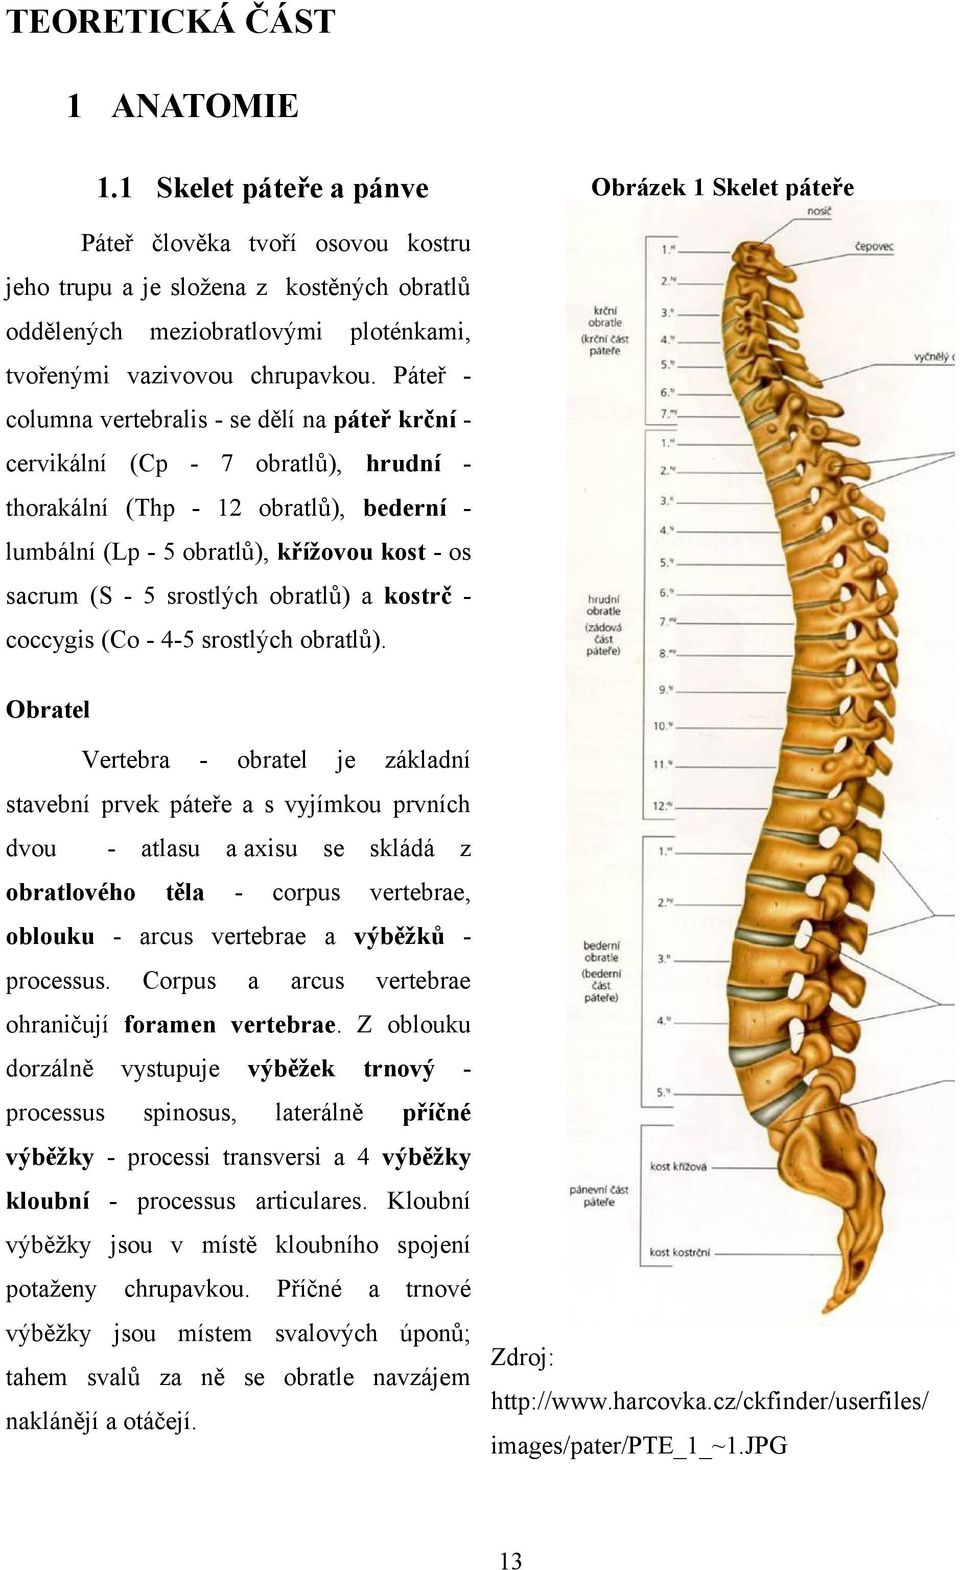 Páteř columna vertebralis - se dělí na páteř krční cervikální (Cp - 7 obratlů), hrudní thorakální (Thp - 12 obratlů), bederní lumbální (Lp - 5 obratlů), křížovou kost - os sacrum (S - 5 srostlých